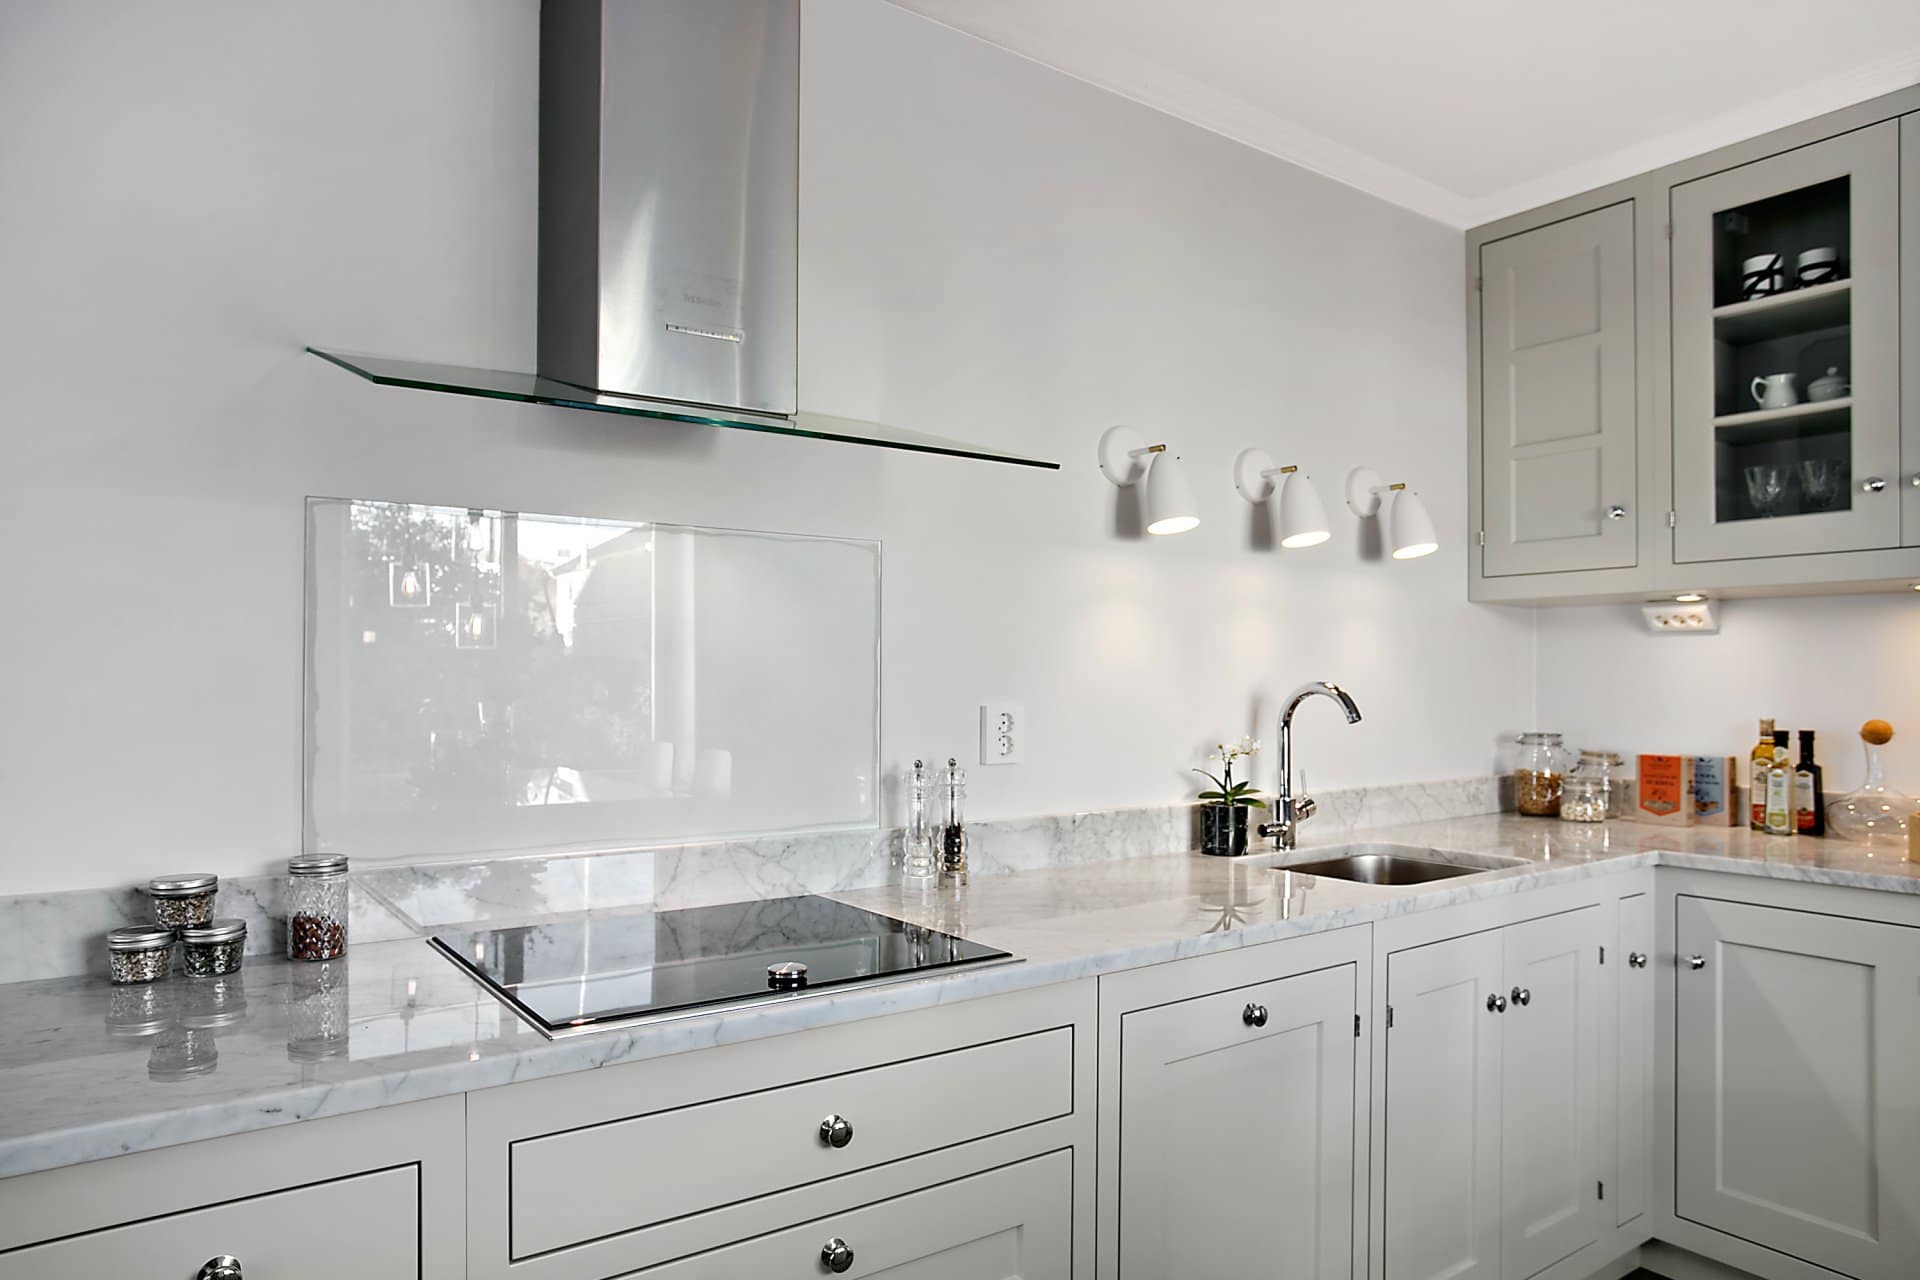 Stiligt - Ett kök med gråa skåp i modern stil.